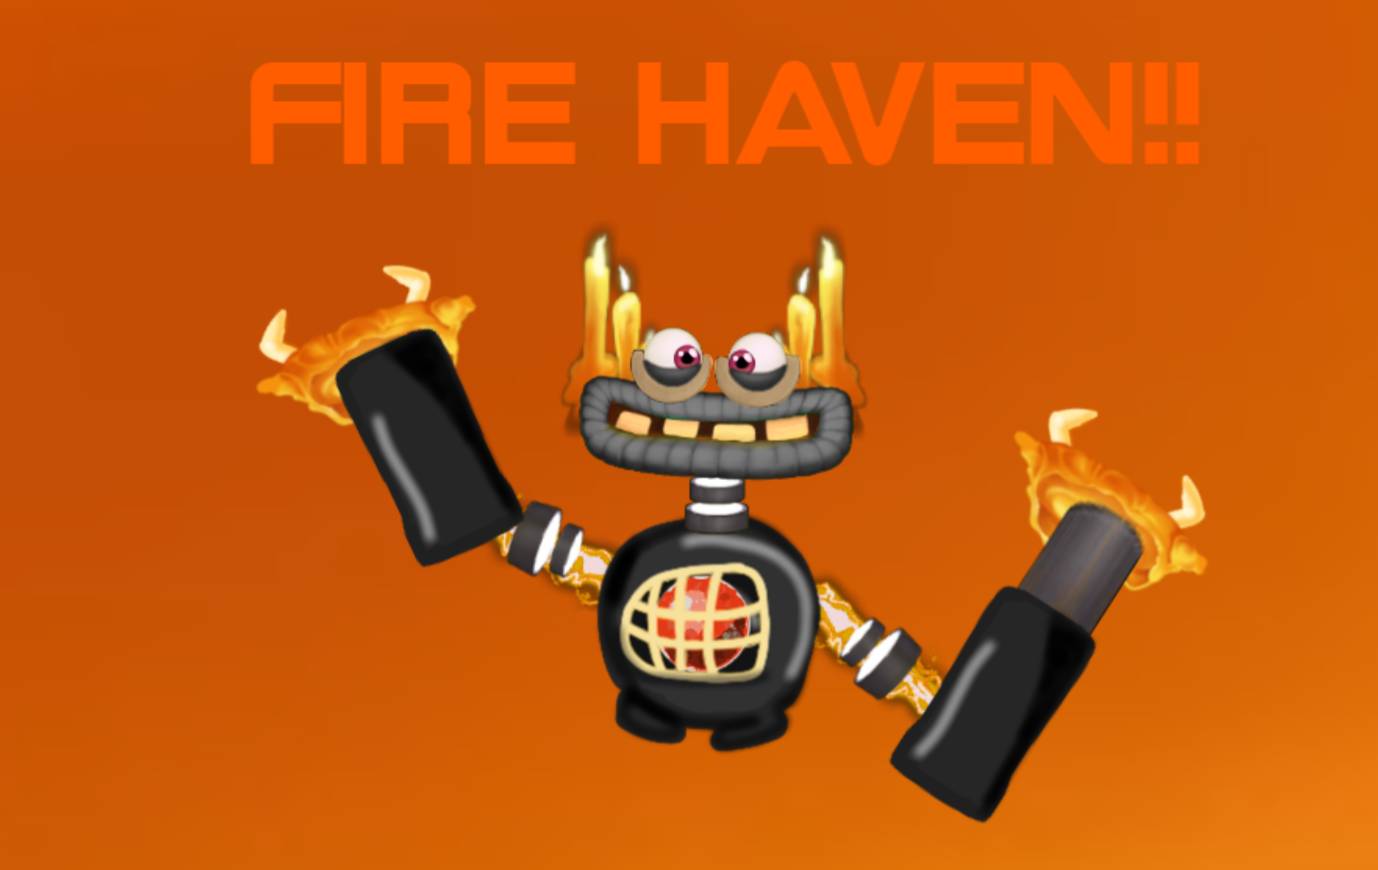 Fire haven epic wubbox v2!!! by n2nian8 on DeviantArt